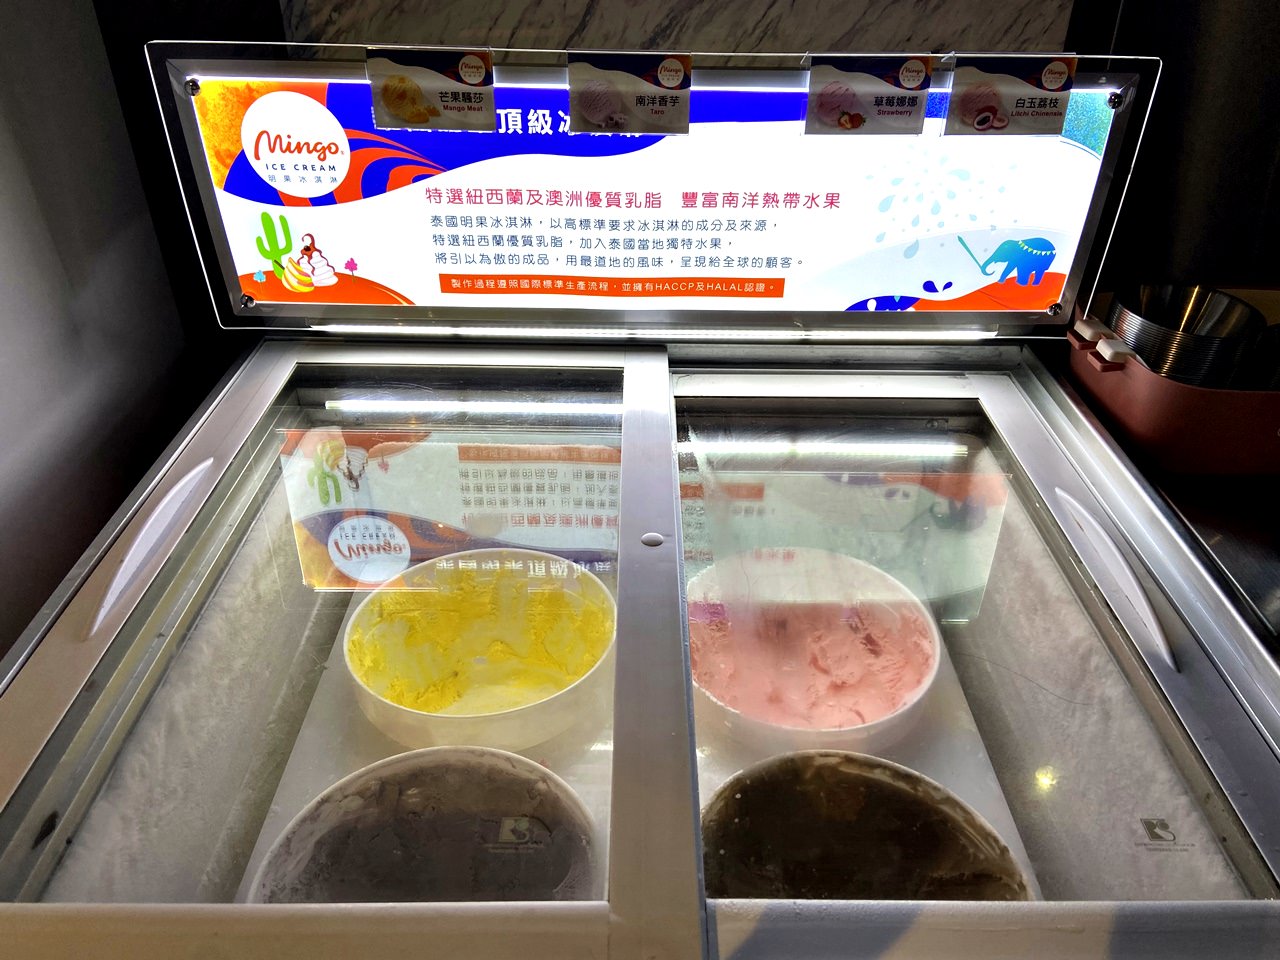 明果冰淇淋-芒果騷莎、南洋香芋、草莓娜娜、白玉荔枝。